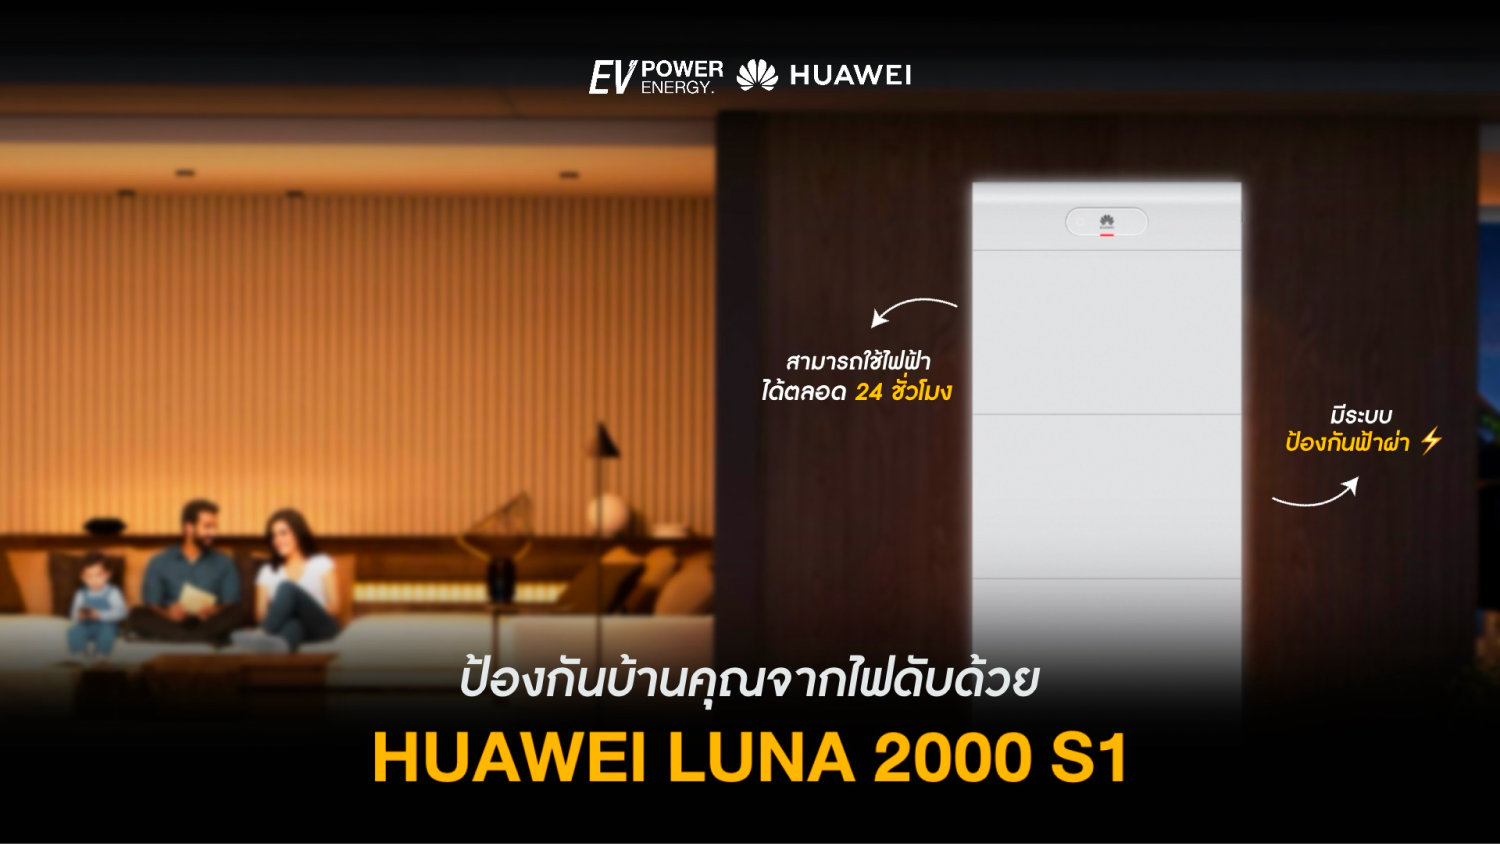 ป้องกันบ้านไฟดับ ด้วย Huawei LUNA 2000 S1